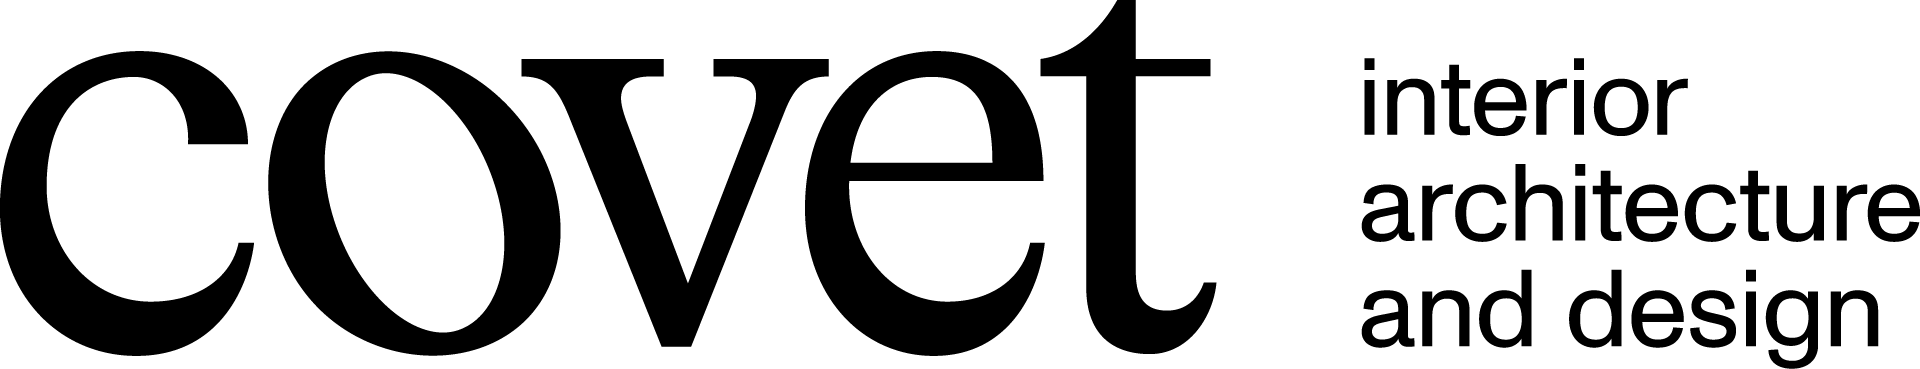 Covet logo black